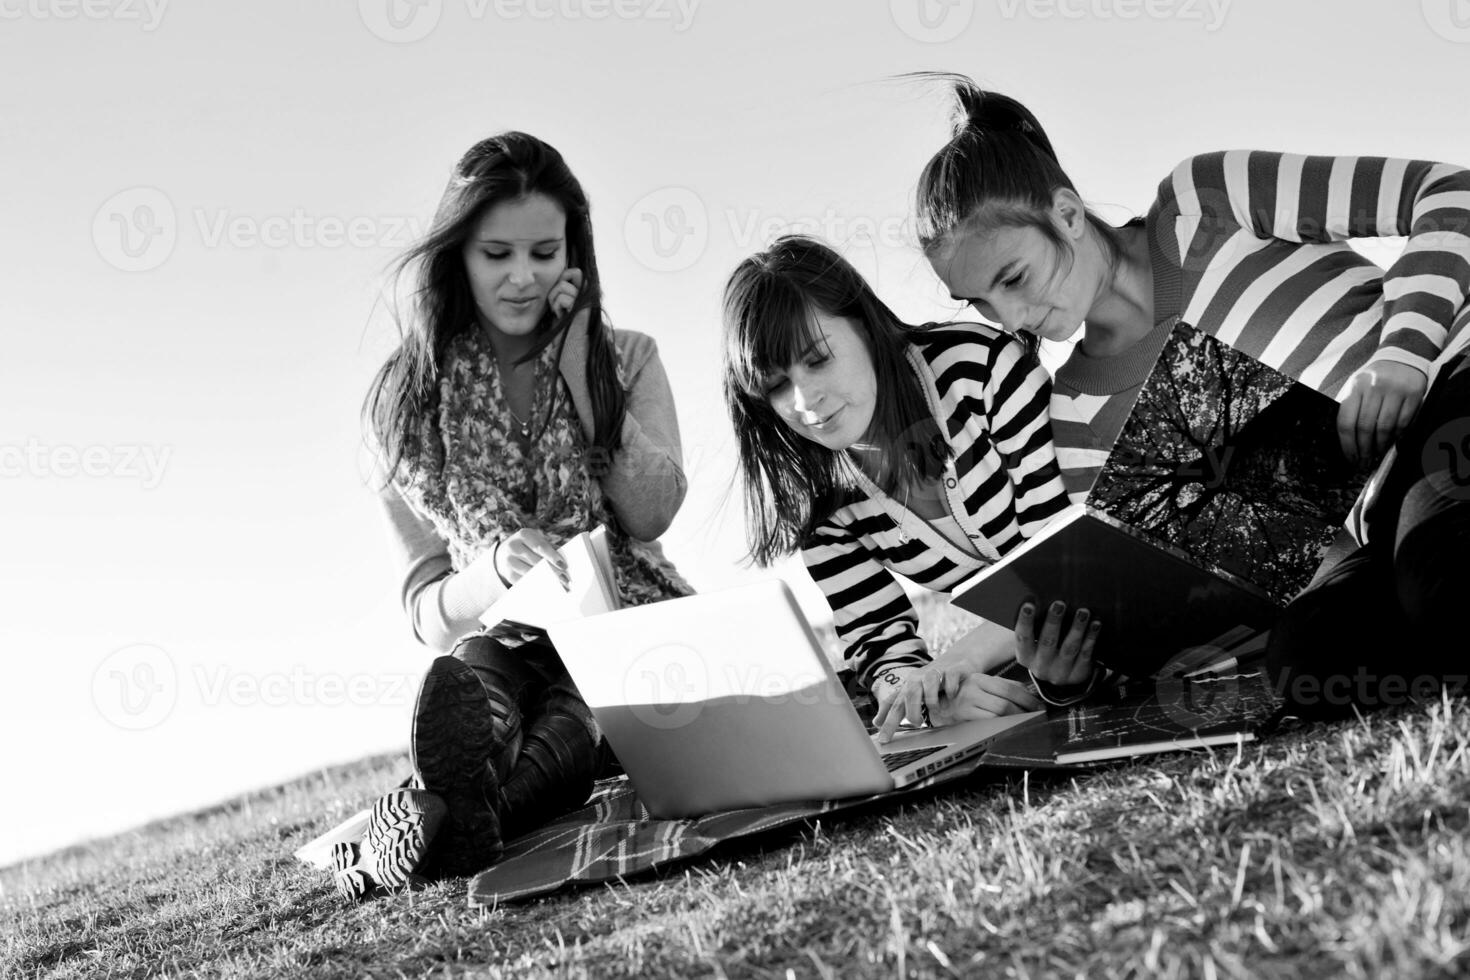 Gruppe von Teenagern, die im Freien am Laptop arbeiten foto